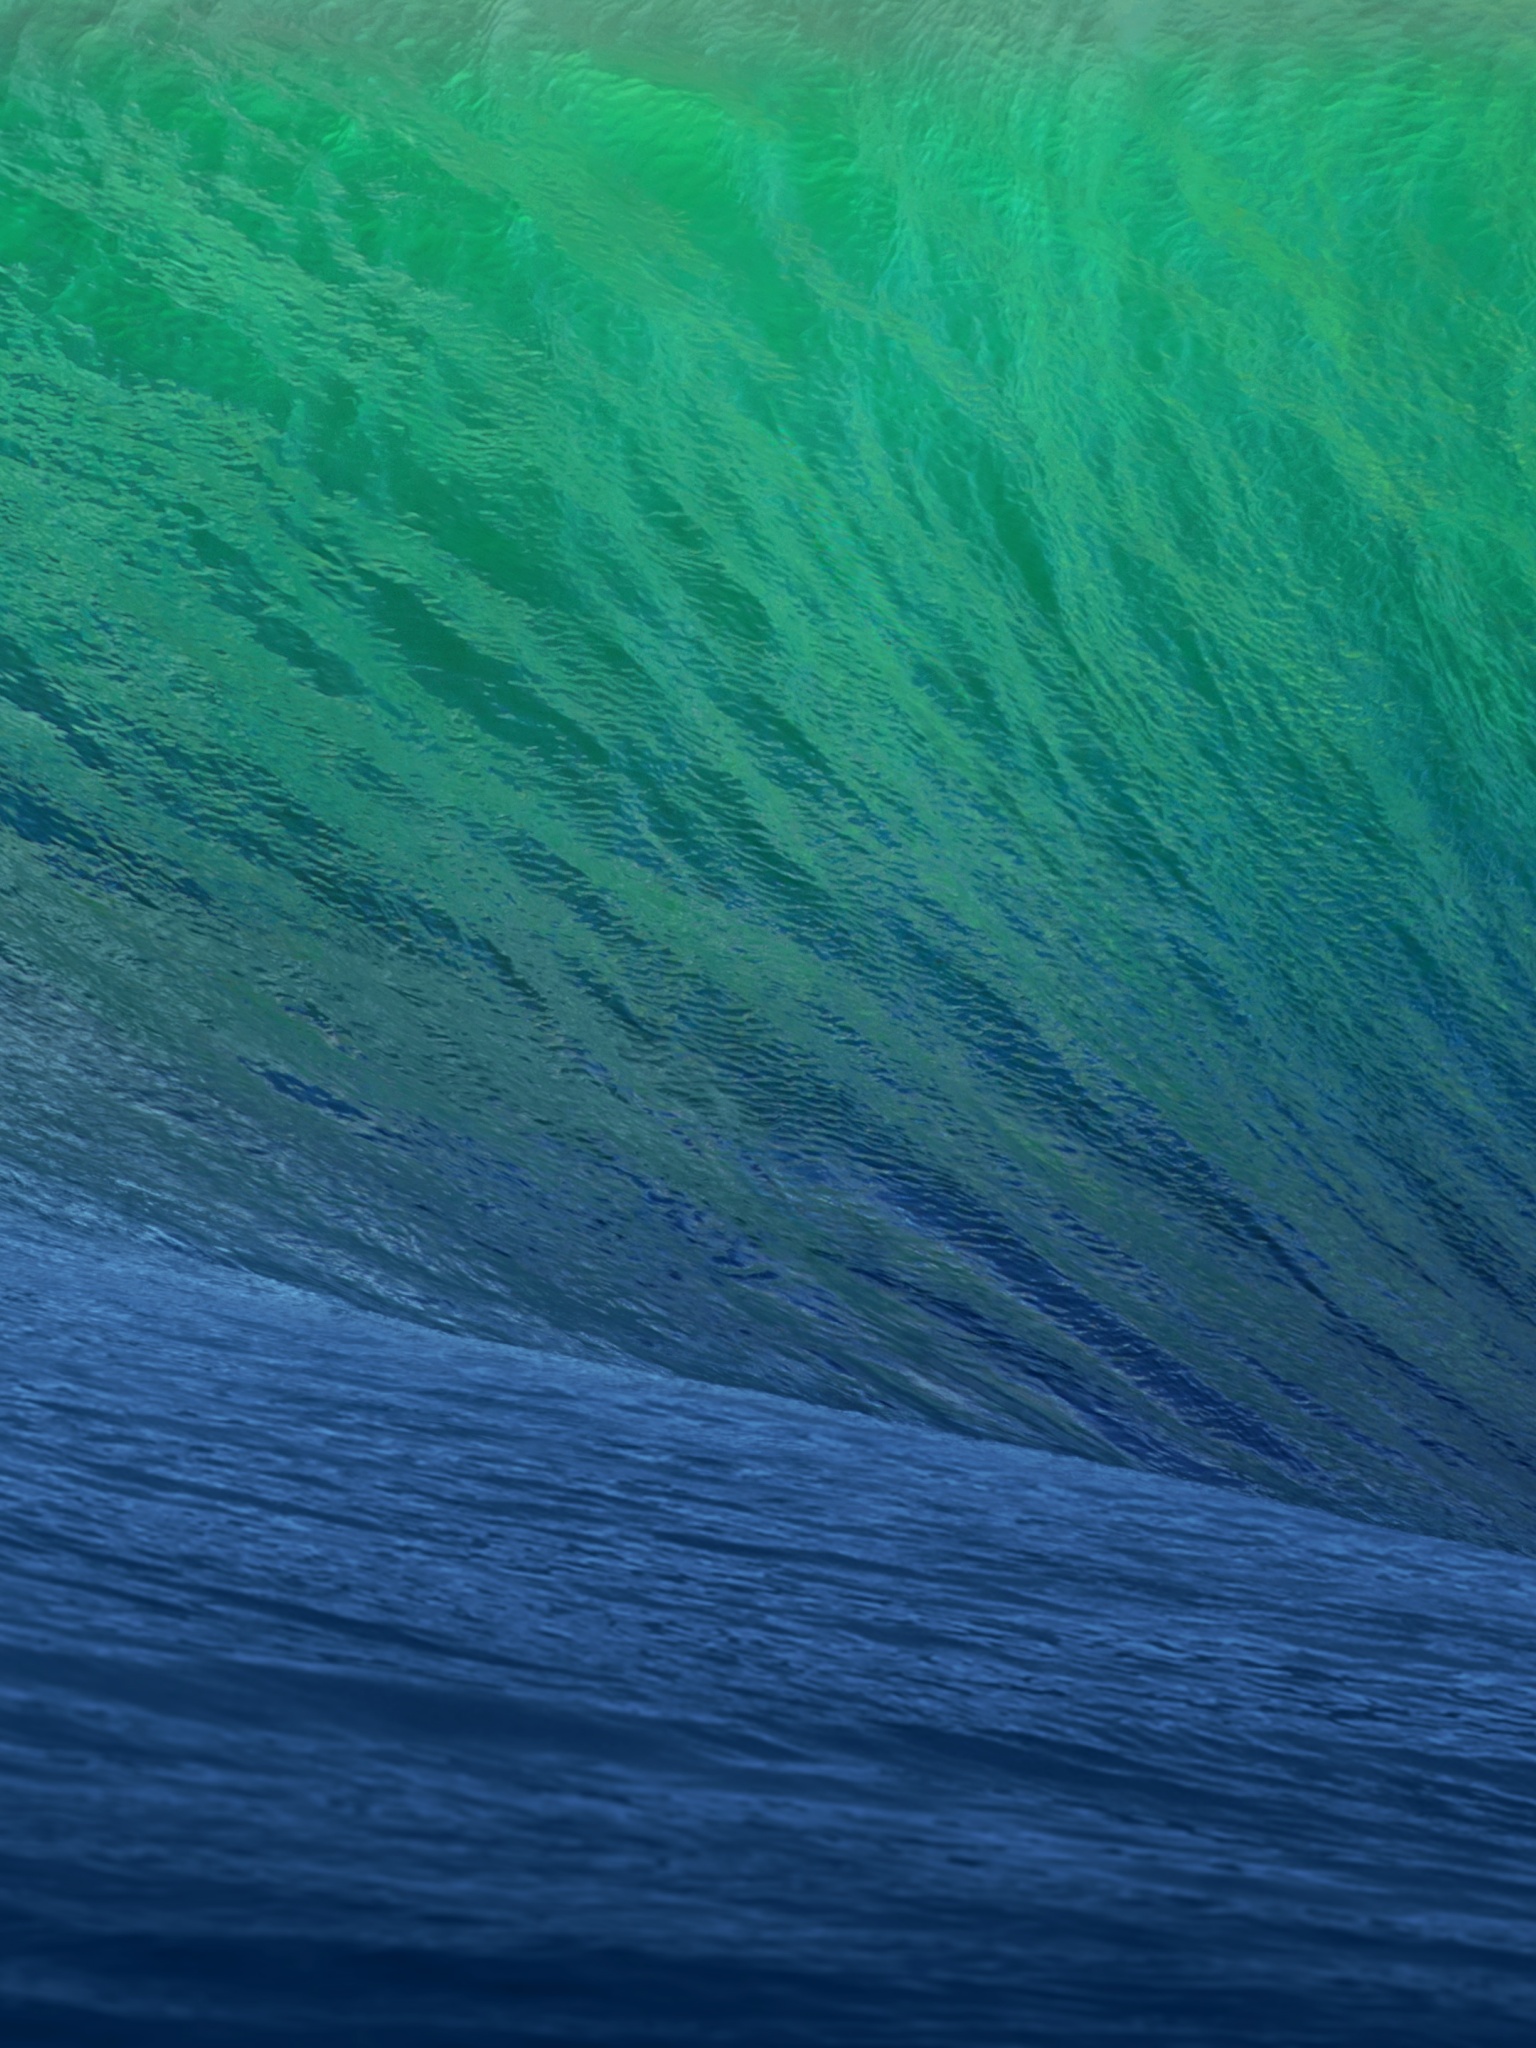 Os X Mavericks Wave iPad Wallpaper